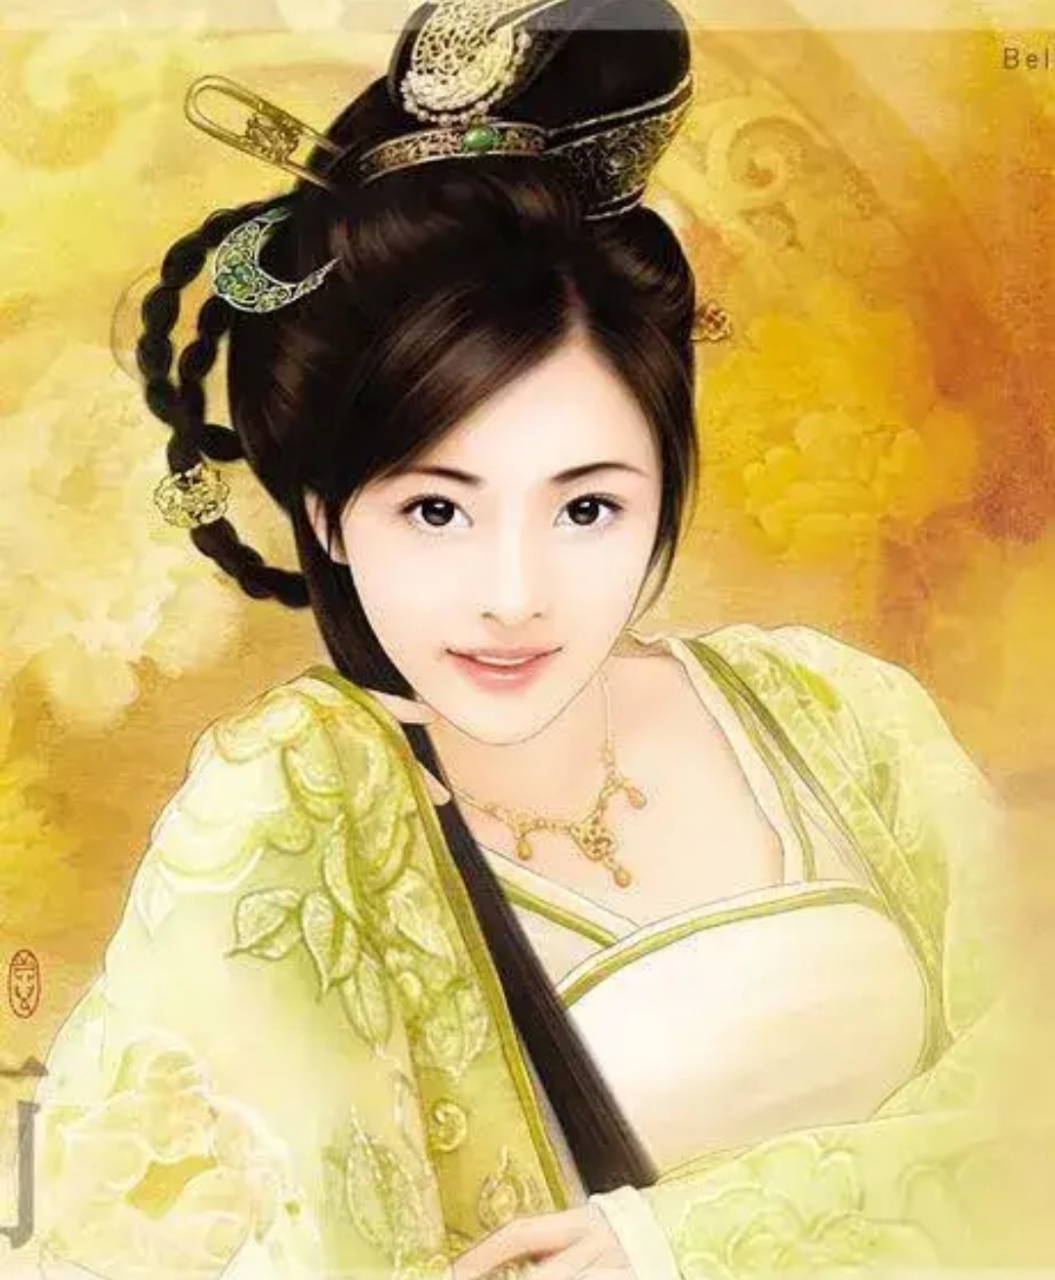 历史上最淫荡无耻的公主刘楚玉被封为山阴公主,为了自己的性欲,曾让